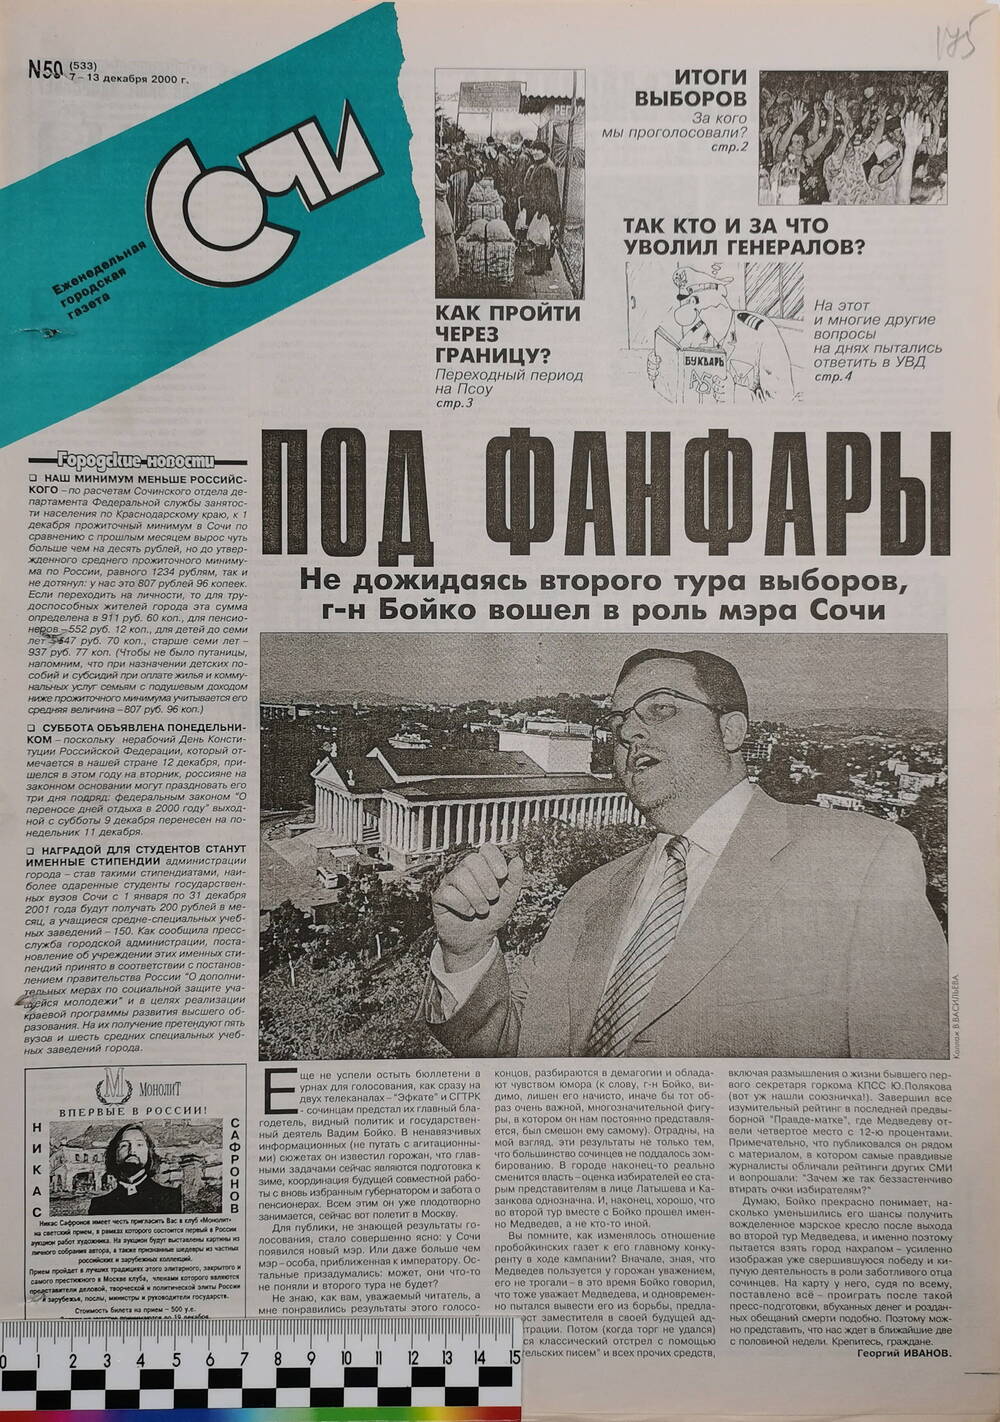 Газета еженедельная городская «Сочи» № 50 (533) с 7 по 13 декабря 2000 г.